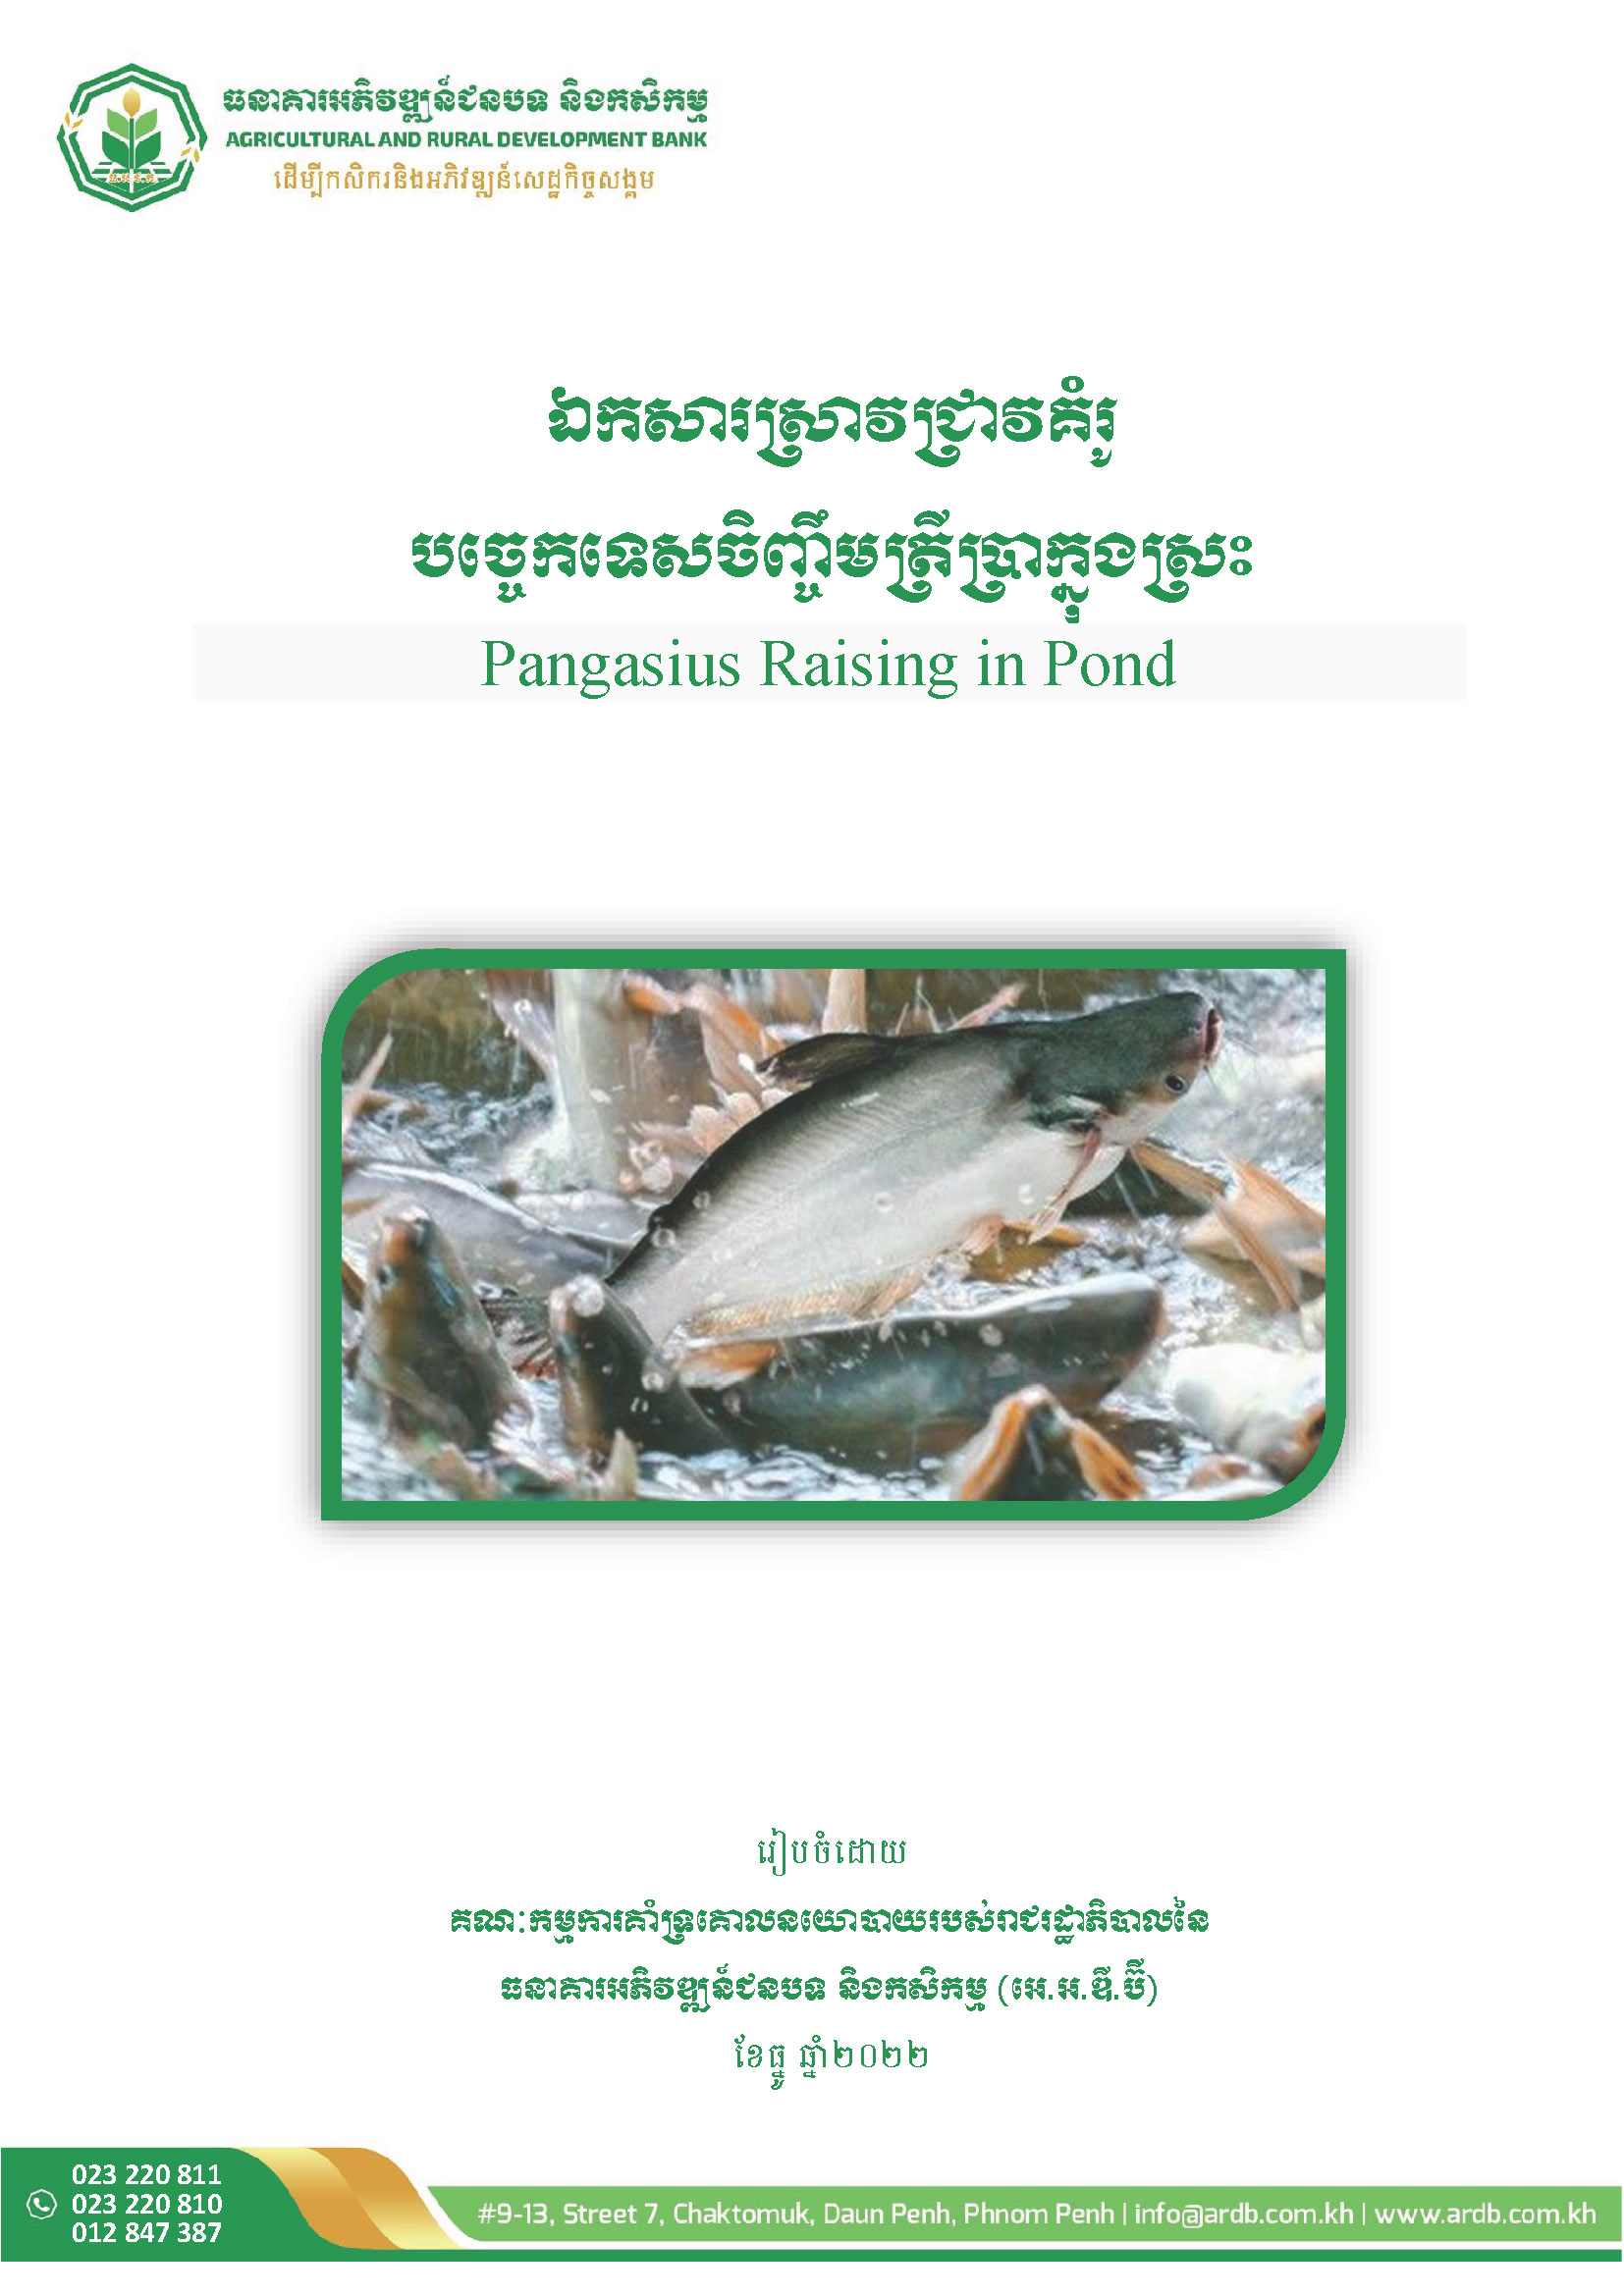 Pangasius Raising in Pond